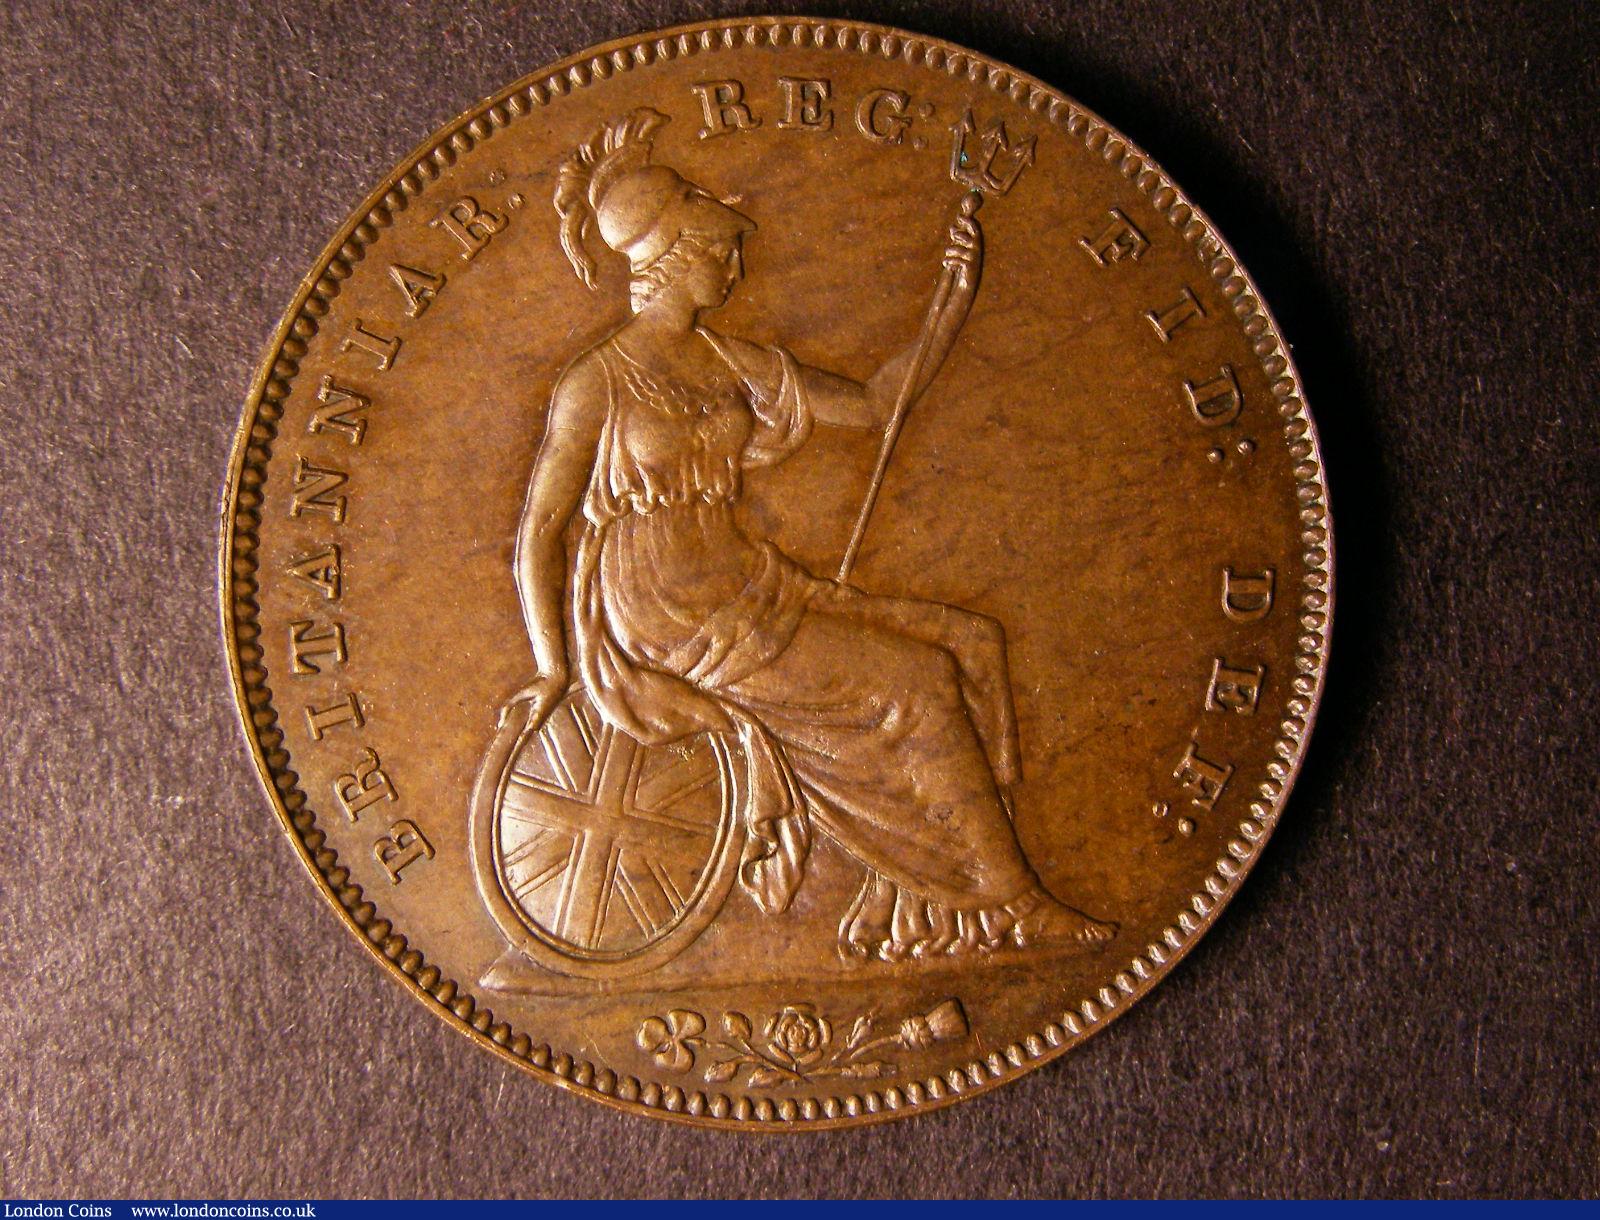 London Coins : Auction 124 : Lot 663 : L663r.jpg